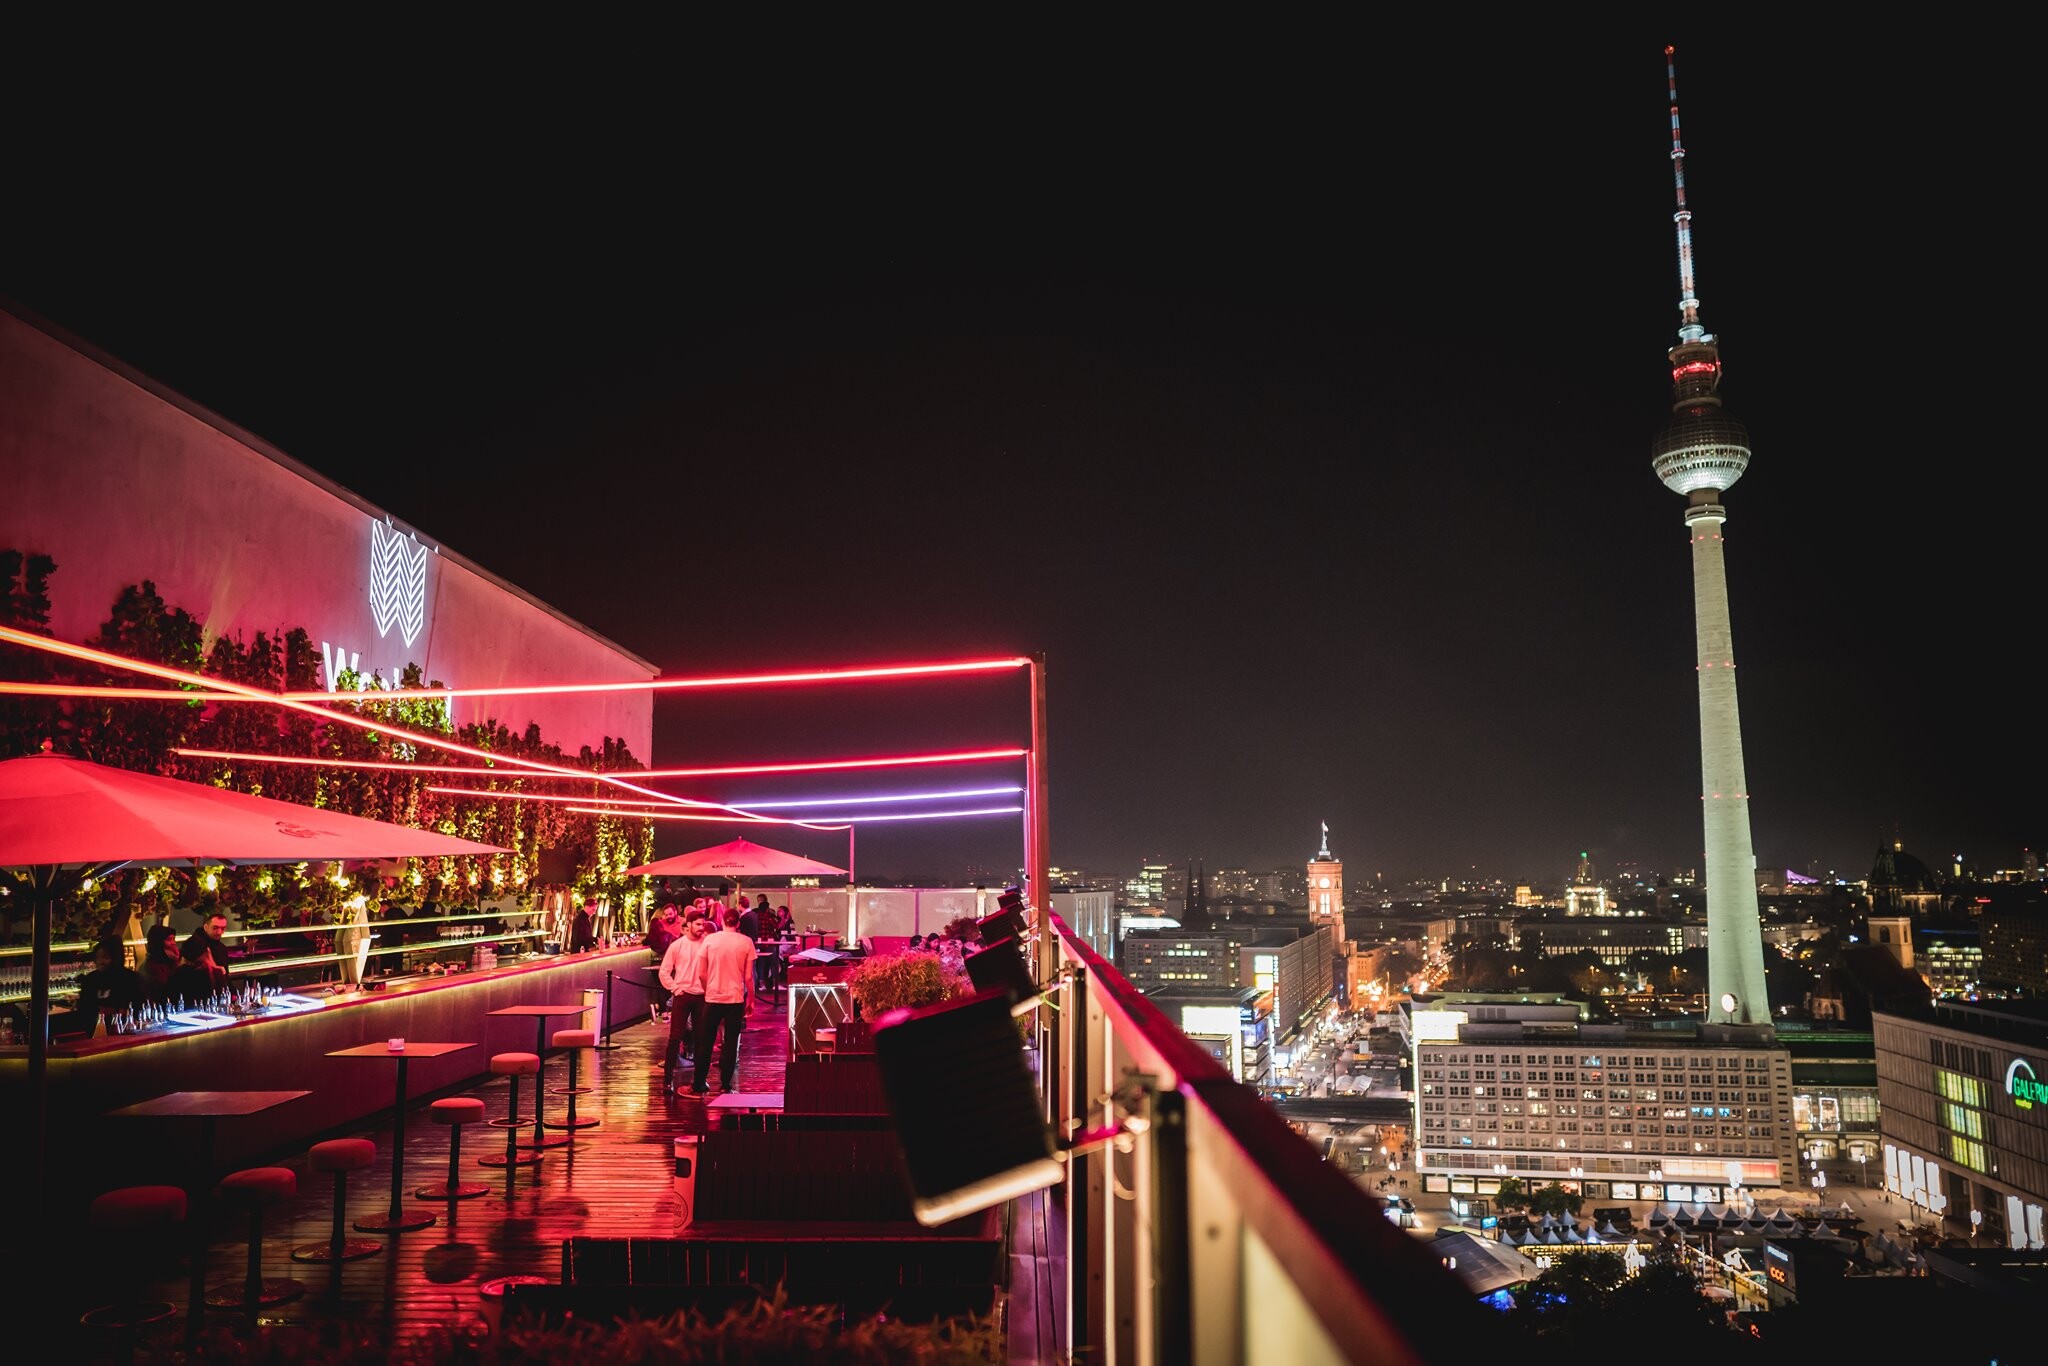 Club Weekend Berlin Eventflyer #2 vom 03.12.2021